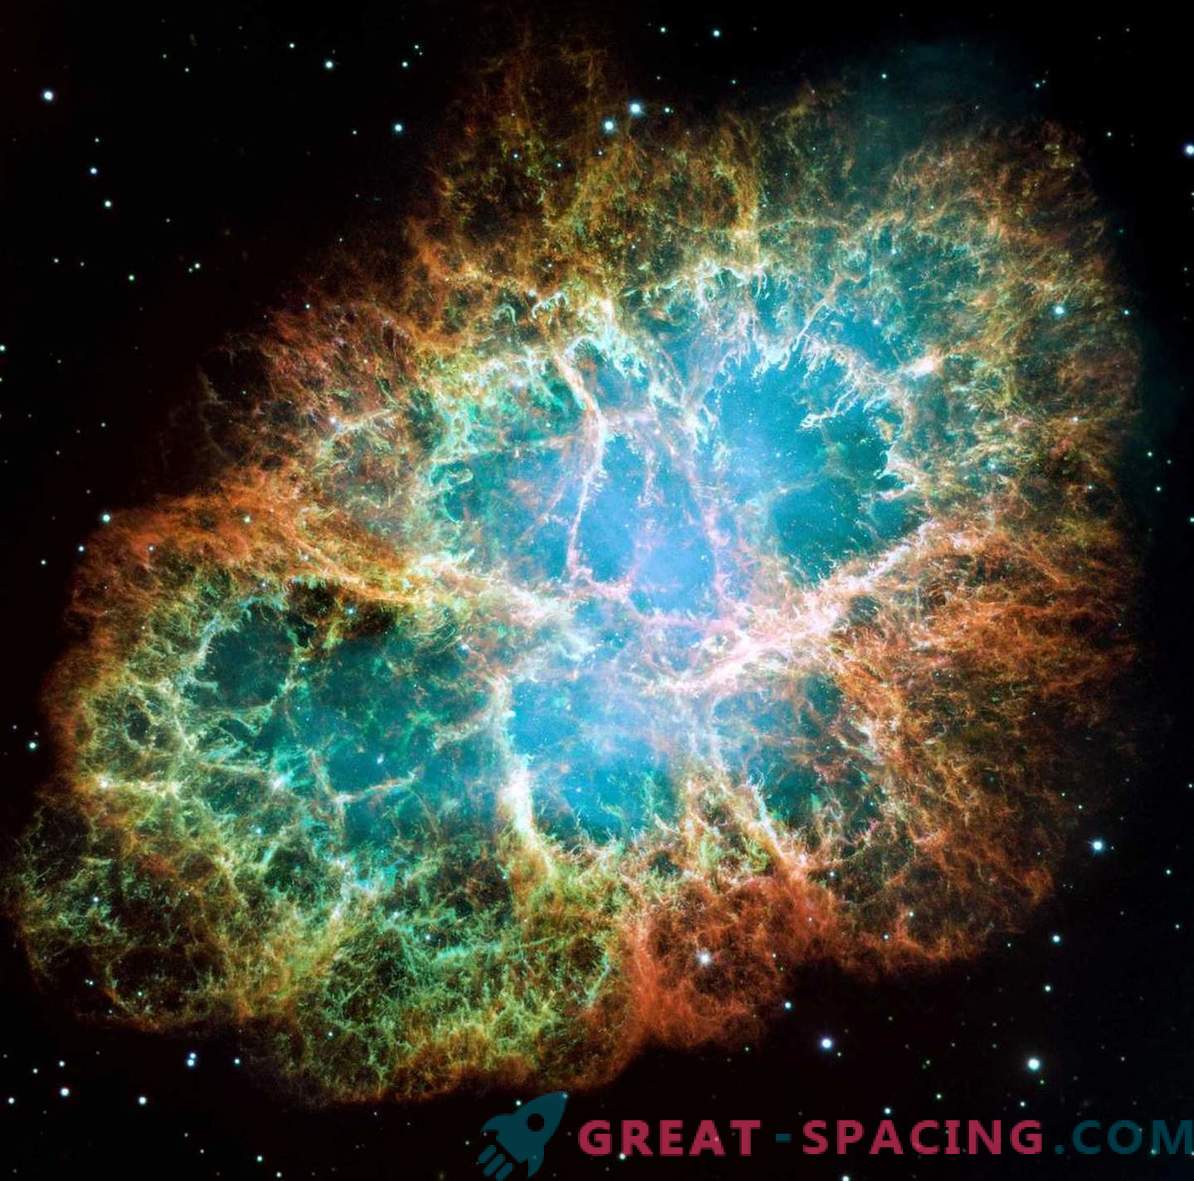 Los astrónomos primero registraron una explosión de supernova en detalle.